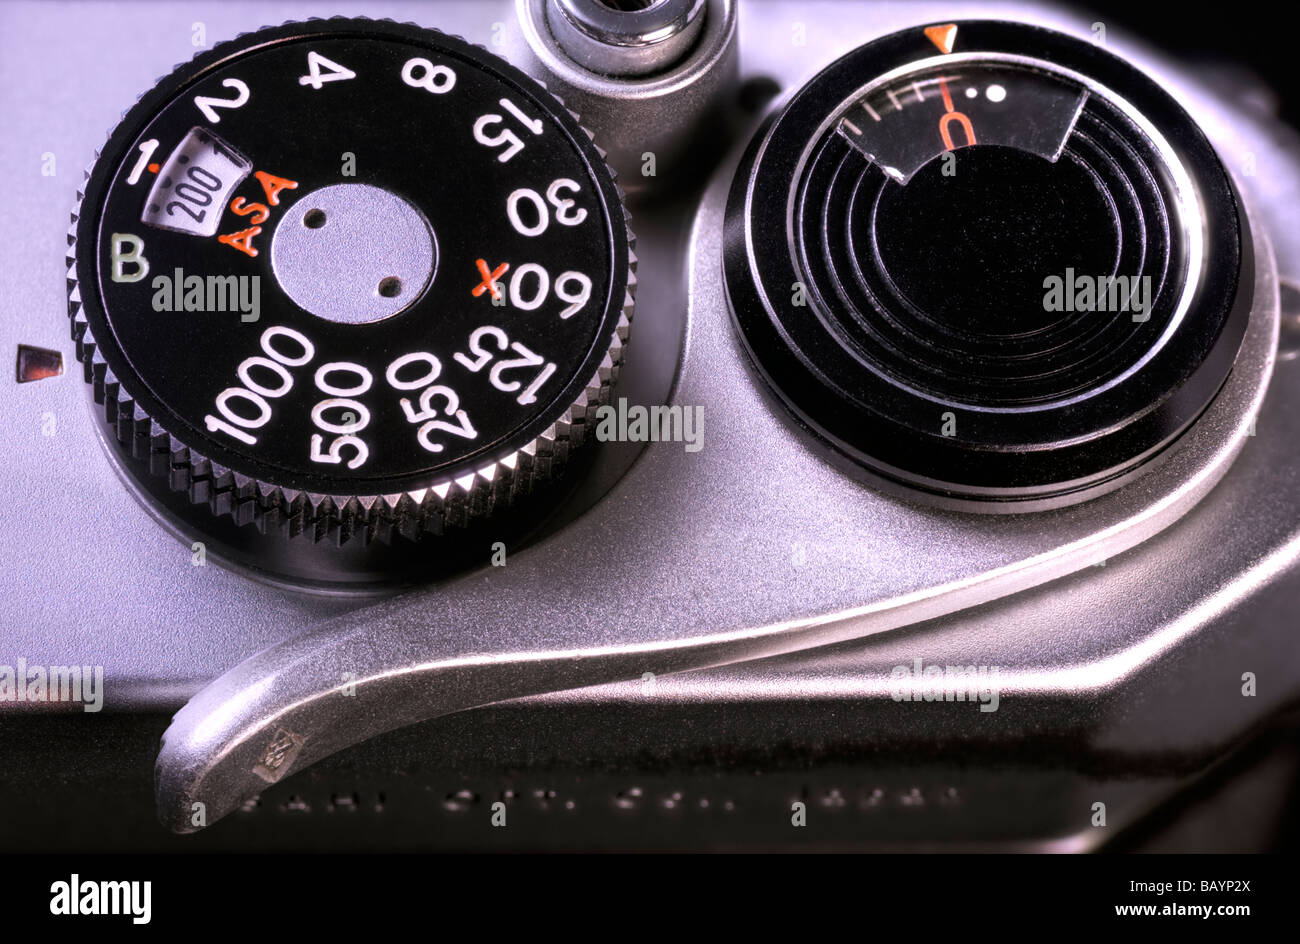 Asahi Pentax Spotmatic II Auslöser, Zifferblatt/Iso Geschwindigkeitsregler, Bildzählwerk und Film Voraus Hebel Stockfoto